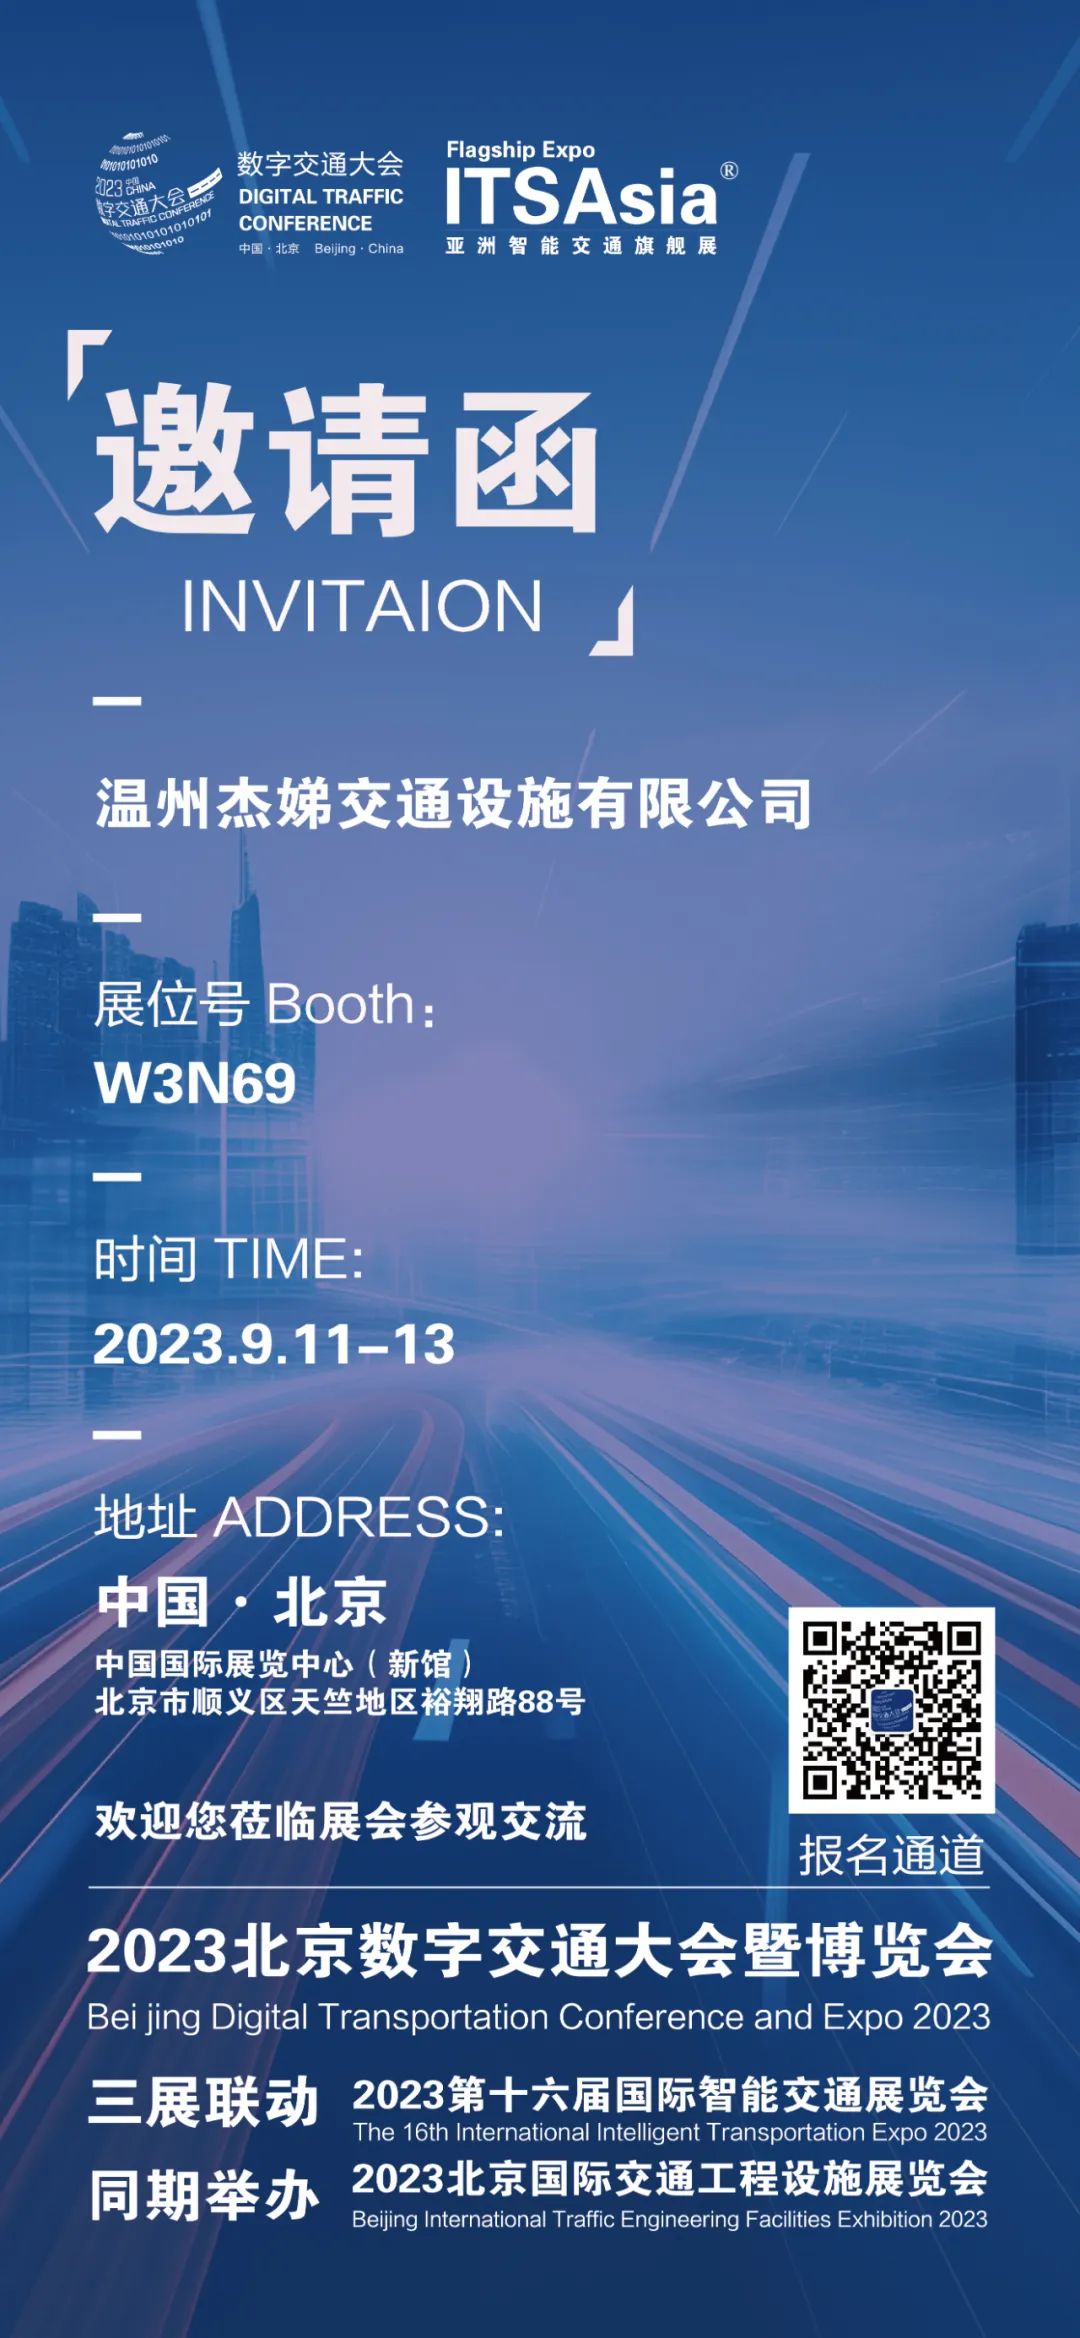 解决方案:温州捷迪交通设施有限公司受邀参加2023年北京国际交通工程设施展览会